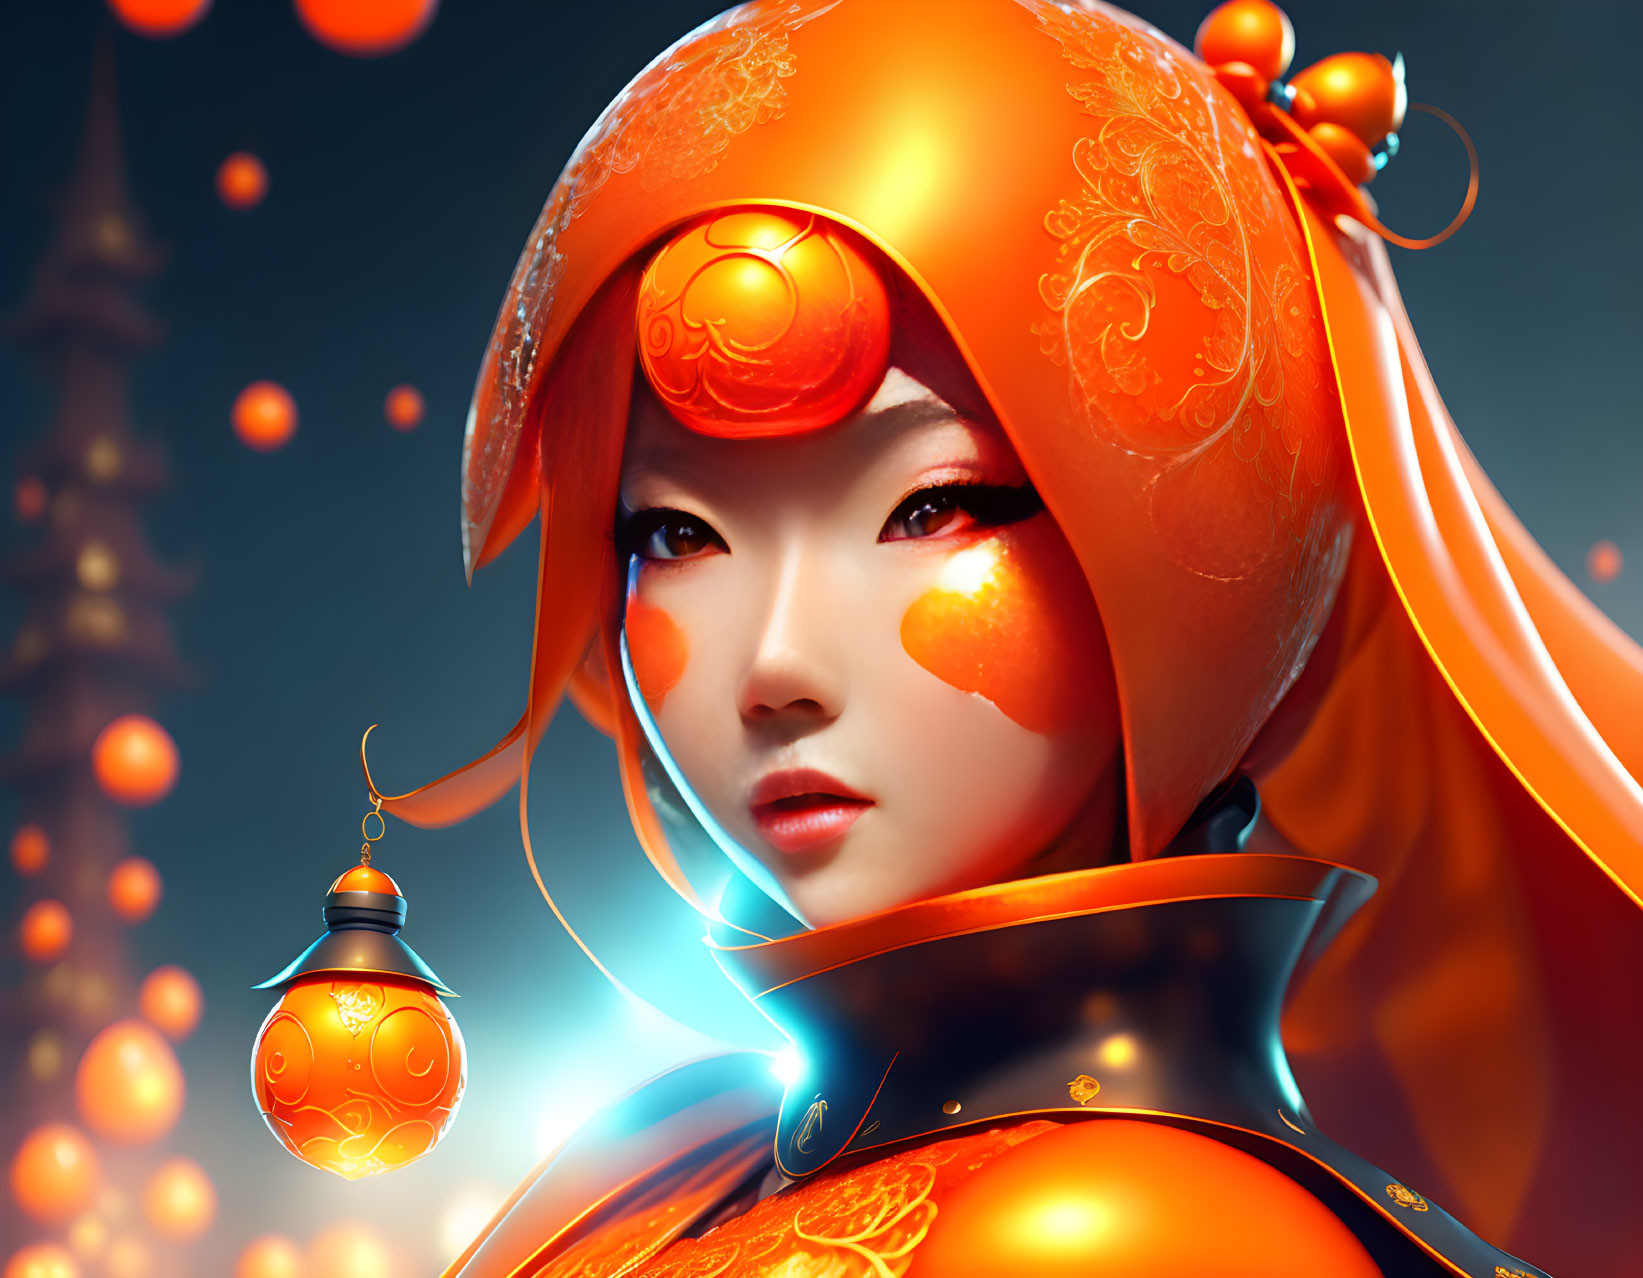 A Famous Anime Orange Lantern Woman by DC